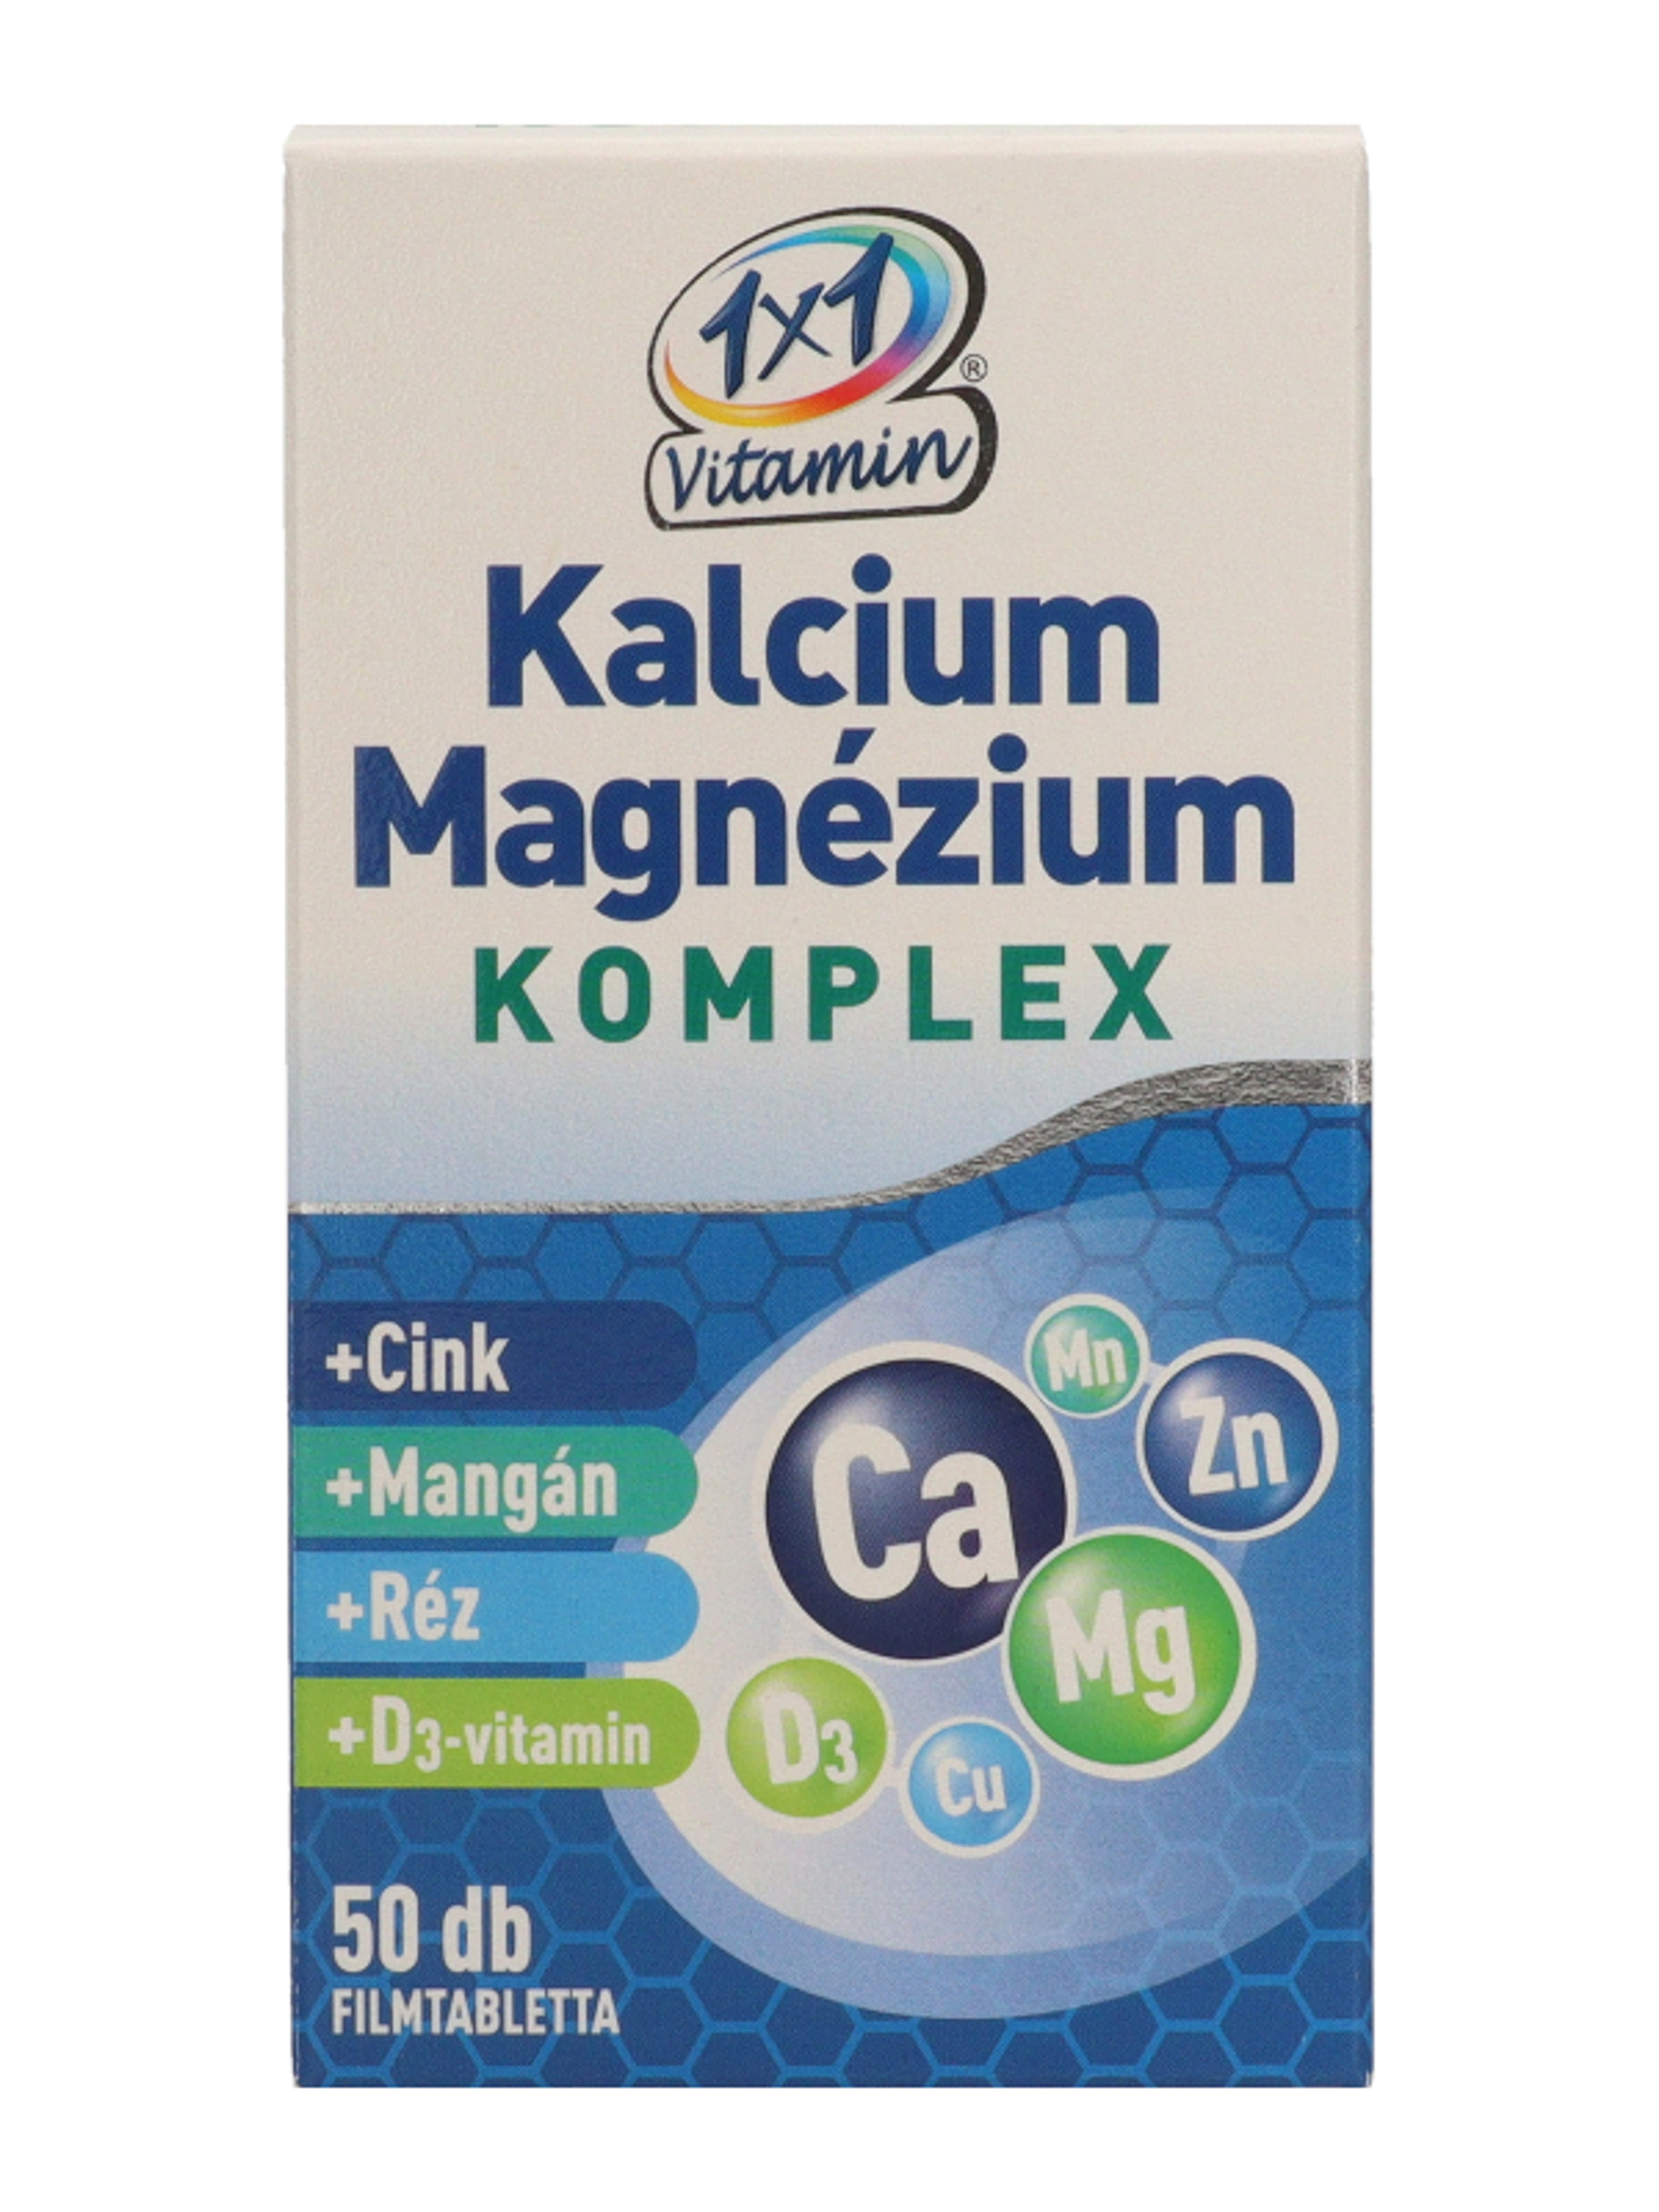 1x1 Vitamin Kalcium + Magnézium Komplex filmtabletta - 50 db